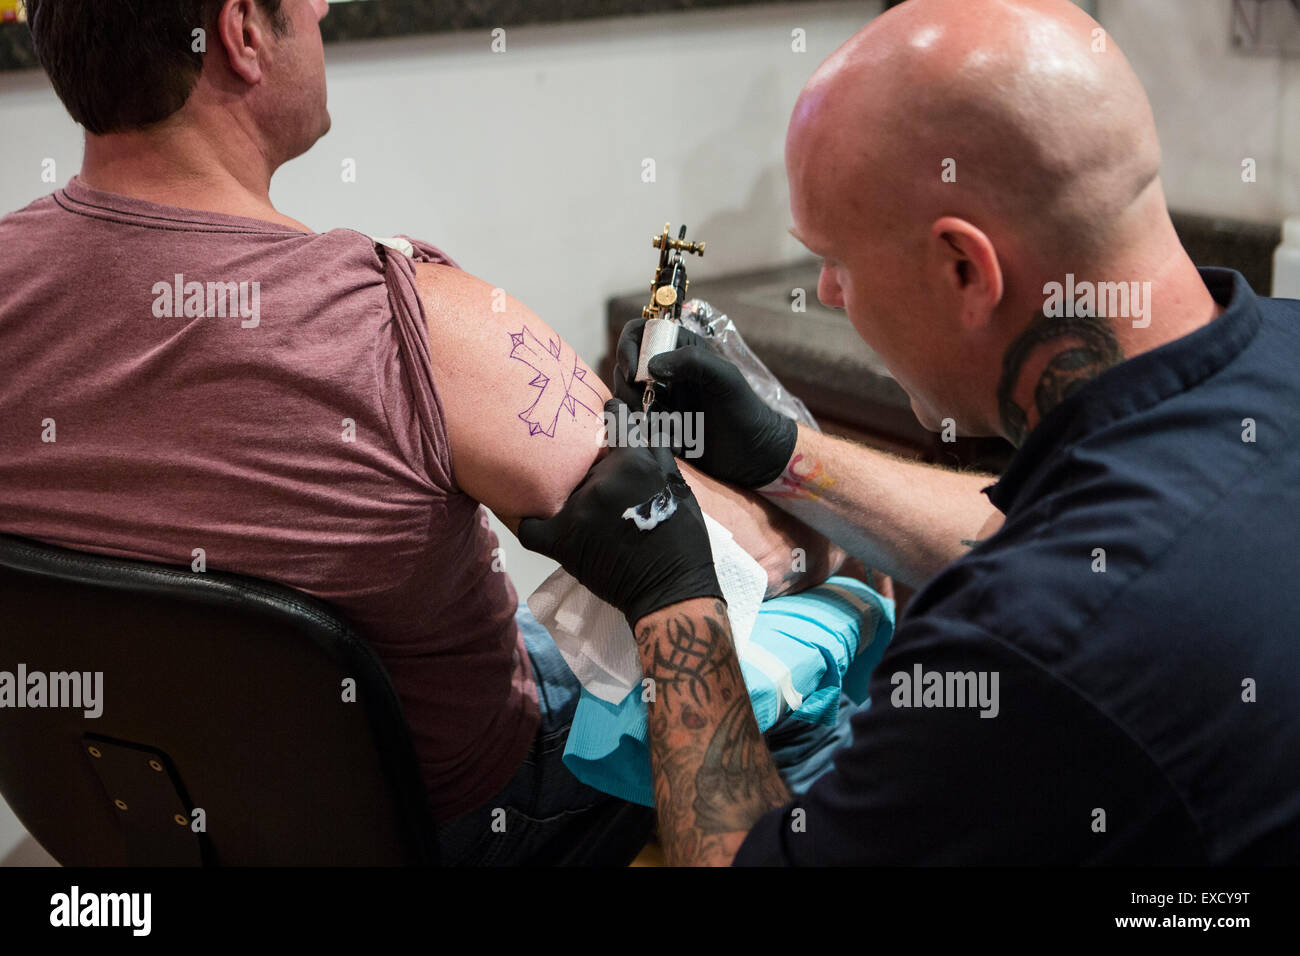 Ein Tattoo-Künstler eine Tätowierung eines Kreuzes auf Arm eines Mannes zu geben. Stockfoto